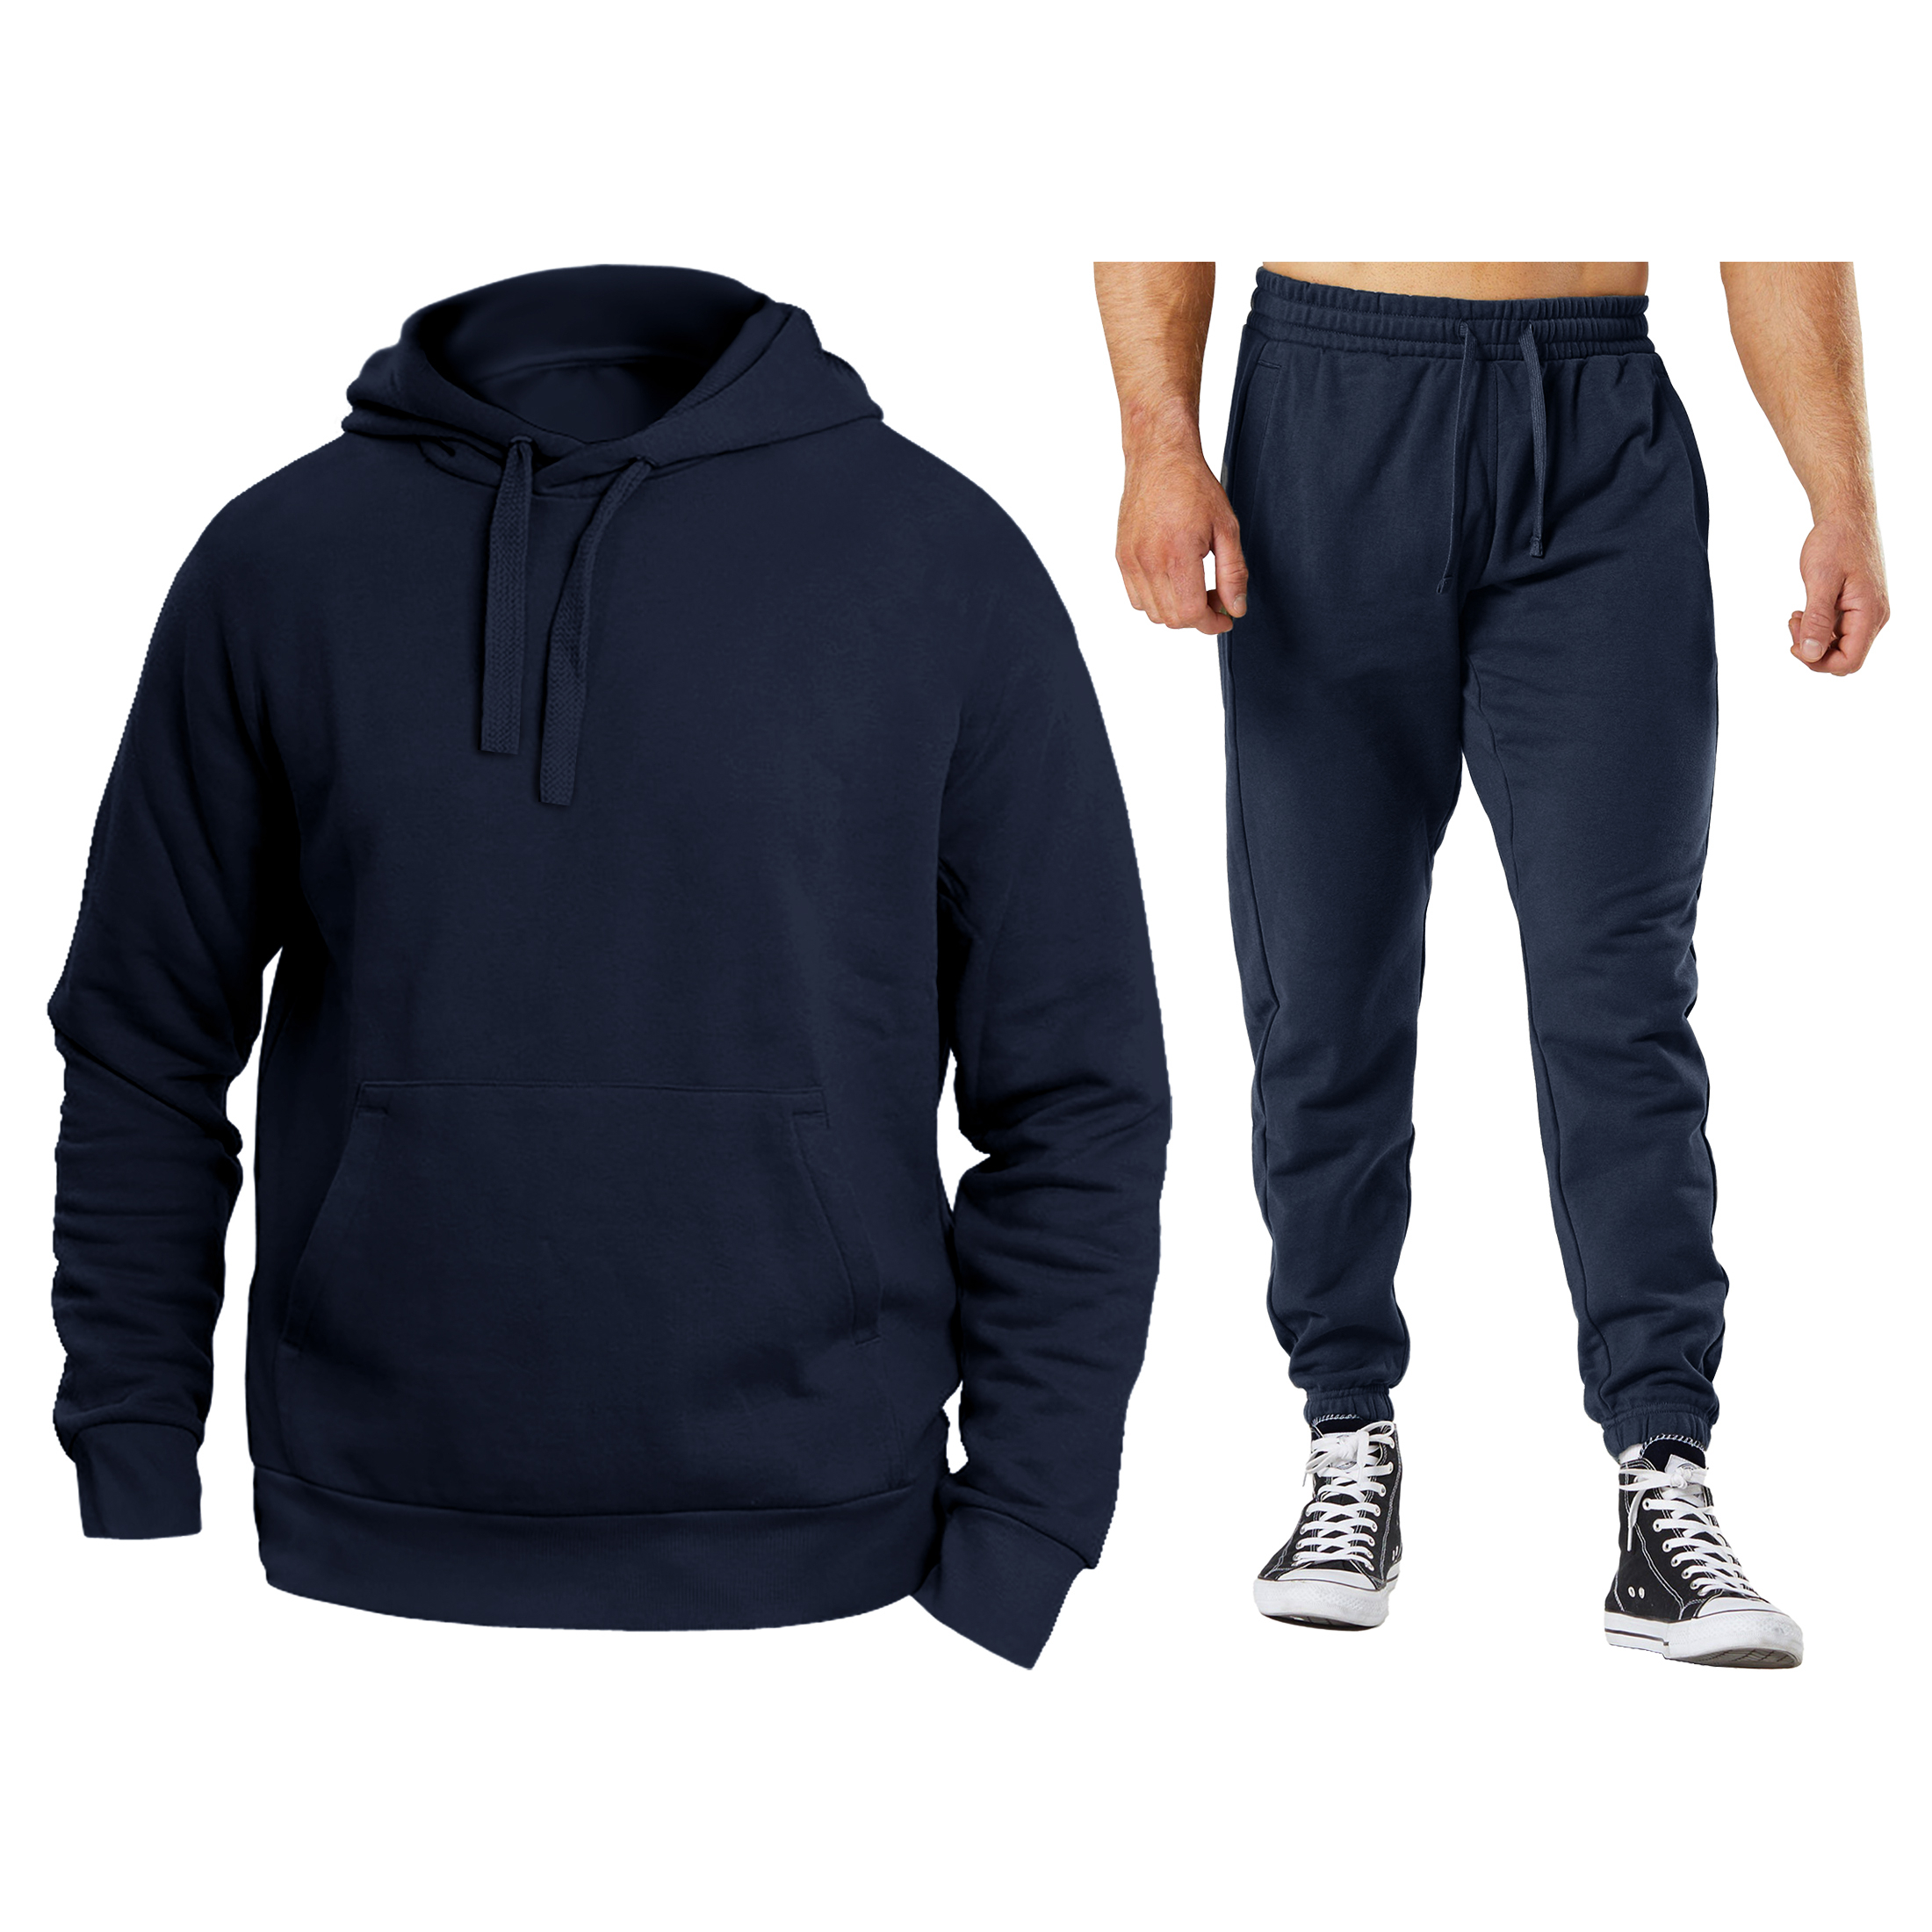 Men's Athletic Warm Jogging Pullover Active Sweatsuit - Grey, Medium